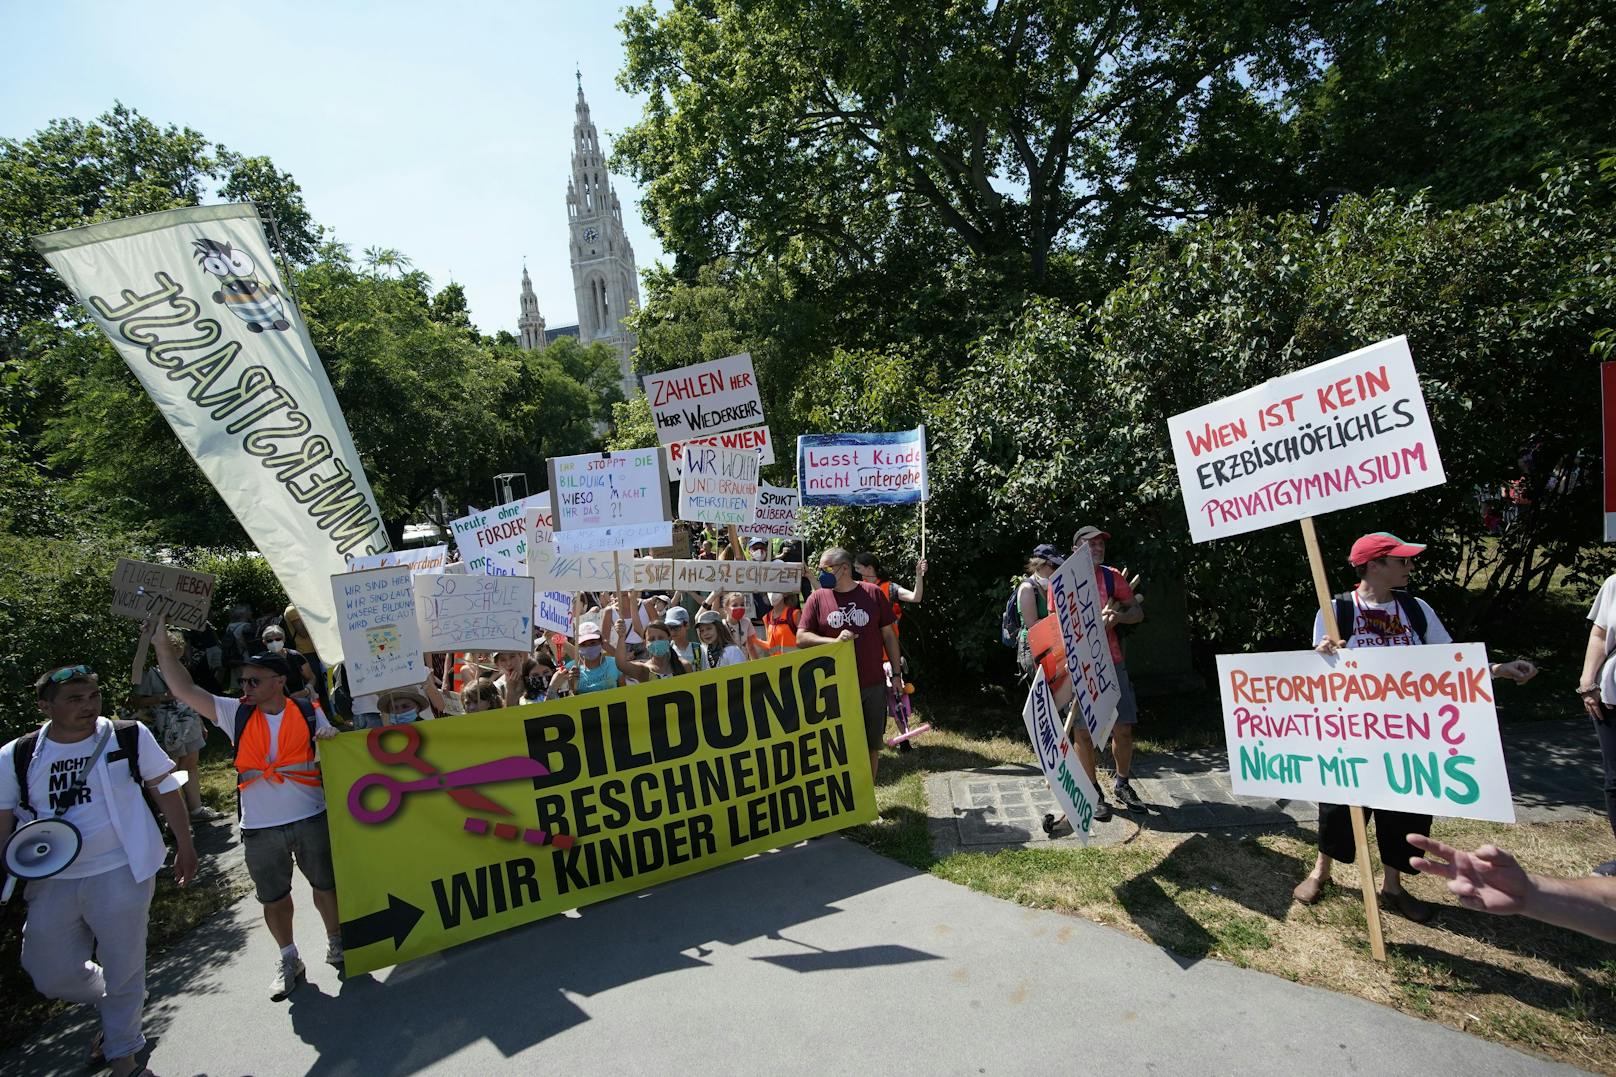 Auf Schildern hielten die Demonstranten die wichtigsten Botschaften fest. Etwa, dass Wien kein "erzbischöfliches Privatgymnasium" werden darf.